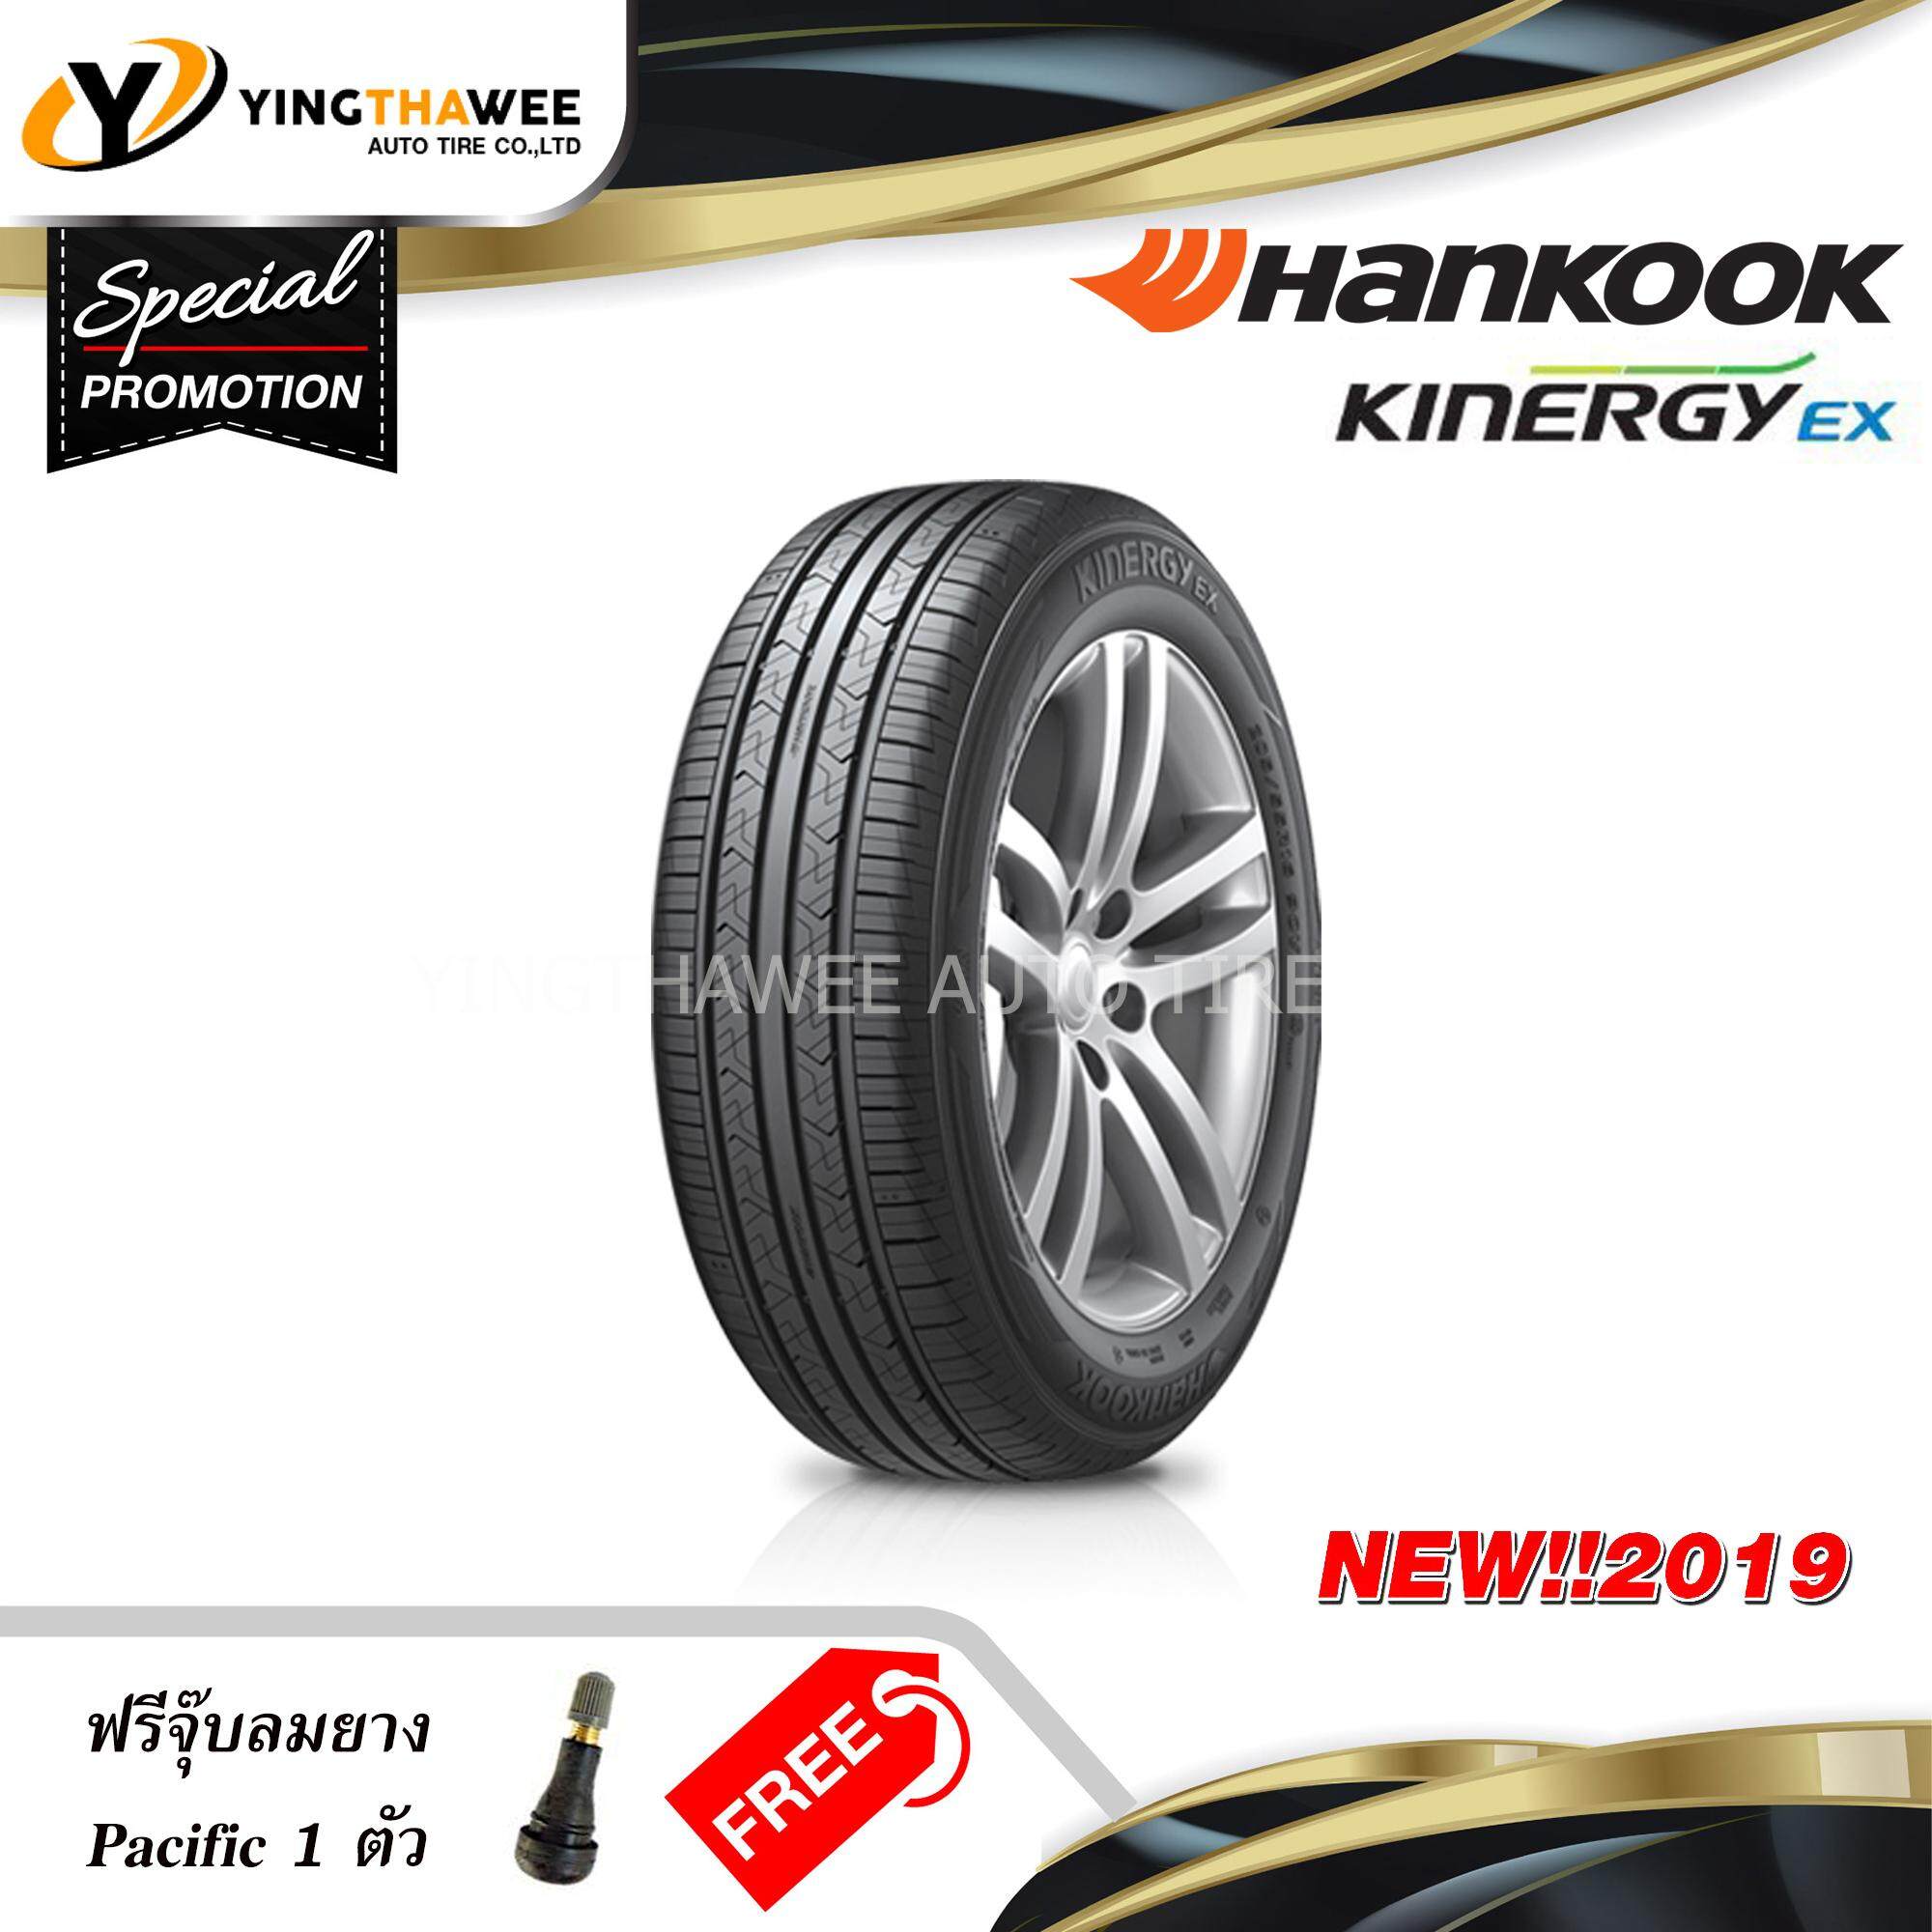  สุพรรณบุรี HANKOOK ยางรถยนต์ 185/65R14 รุ่น KINERGY EX (H308) จำนวน 1 เส้น (ปี 2019) แถมจุ๊บลมยางหัวทองเหลือง 1 ตัว